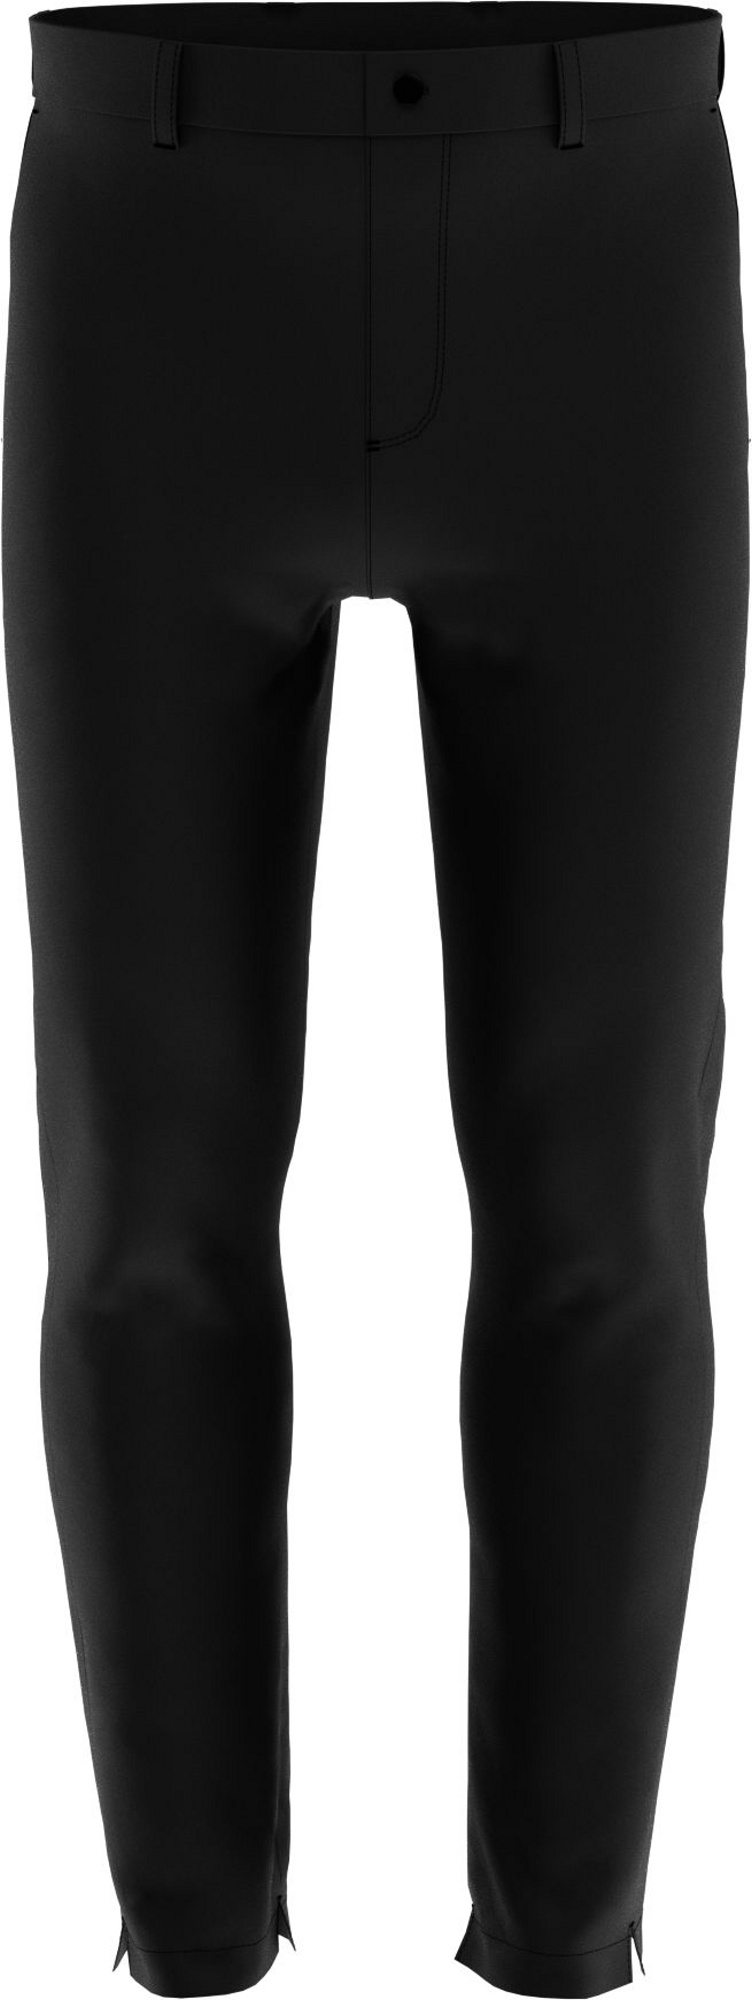 Callaway Water Resistant zateplené pánské golfové kalhoty, černé, vel. 30/30